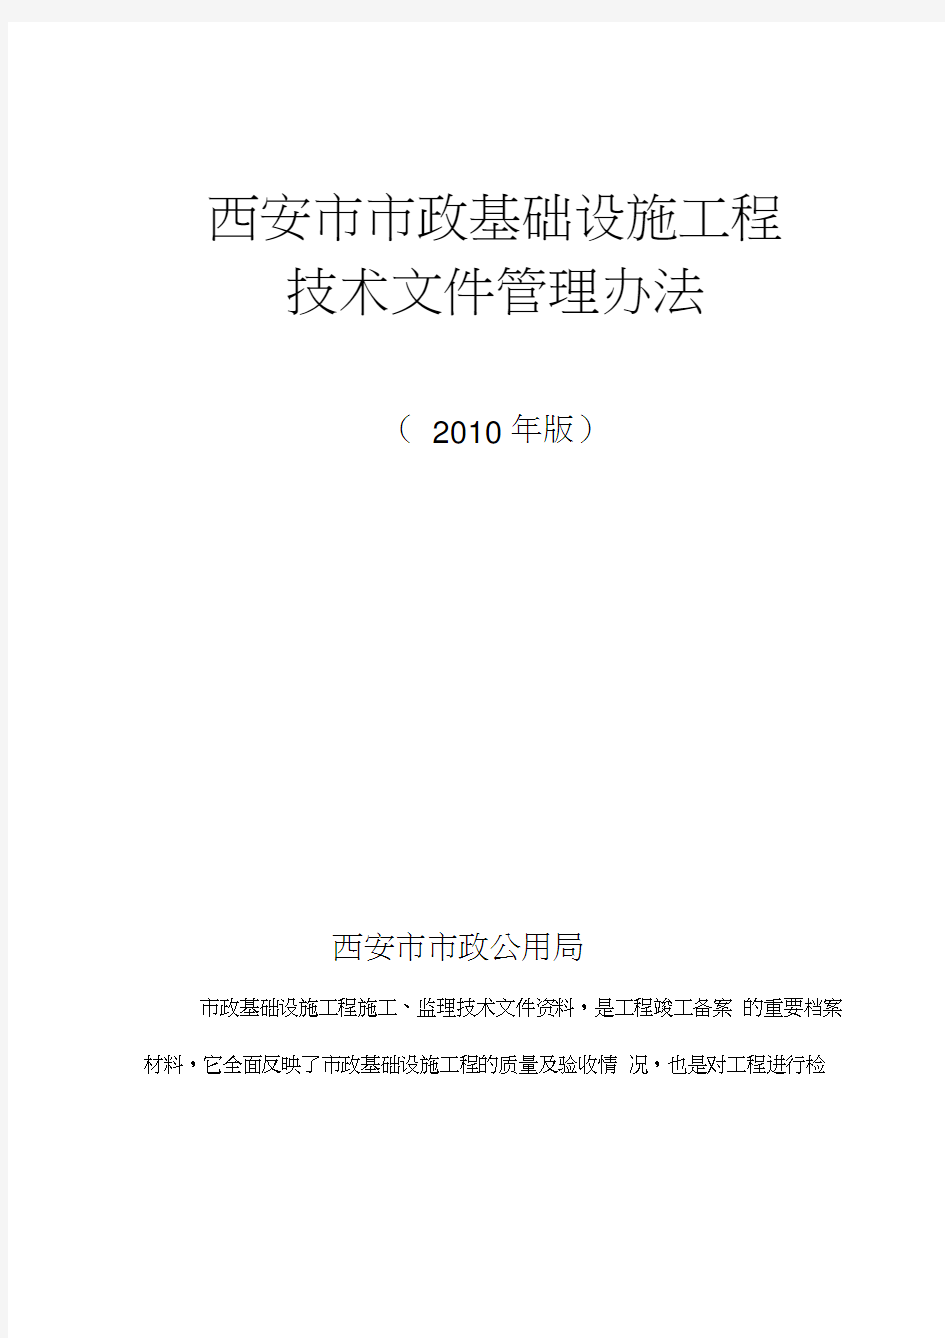 《西安市市政基础设施工程技术文件管理办法及表格大全》(2010年版)